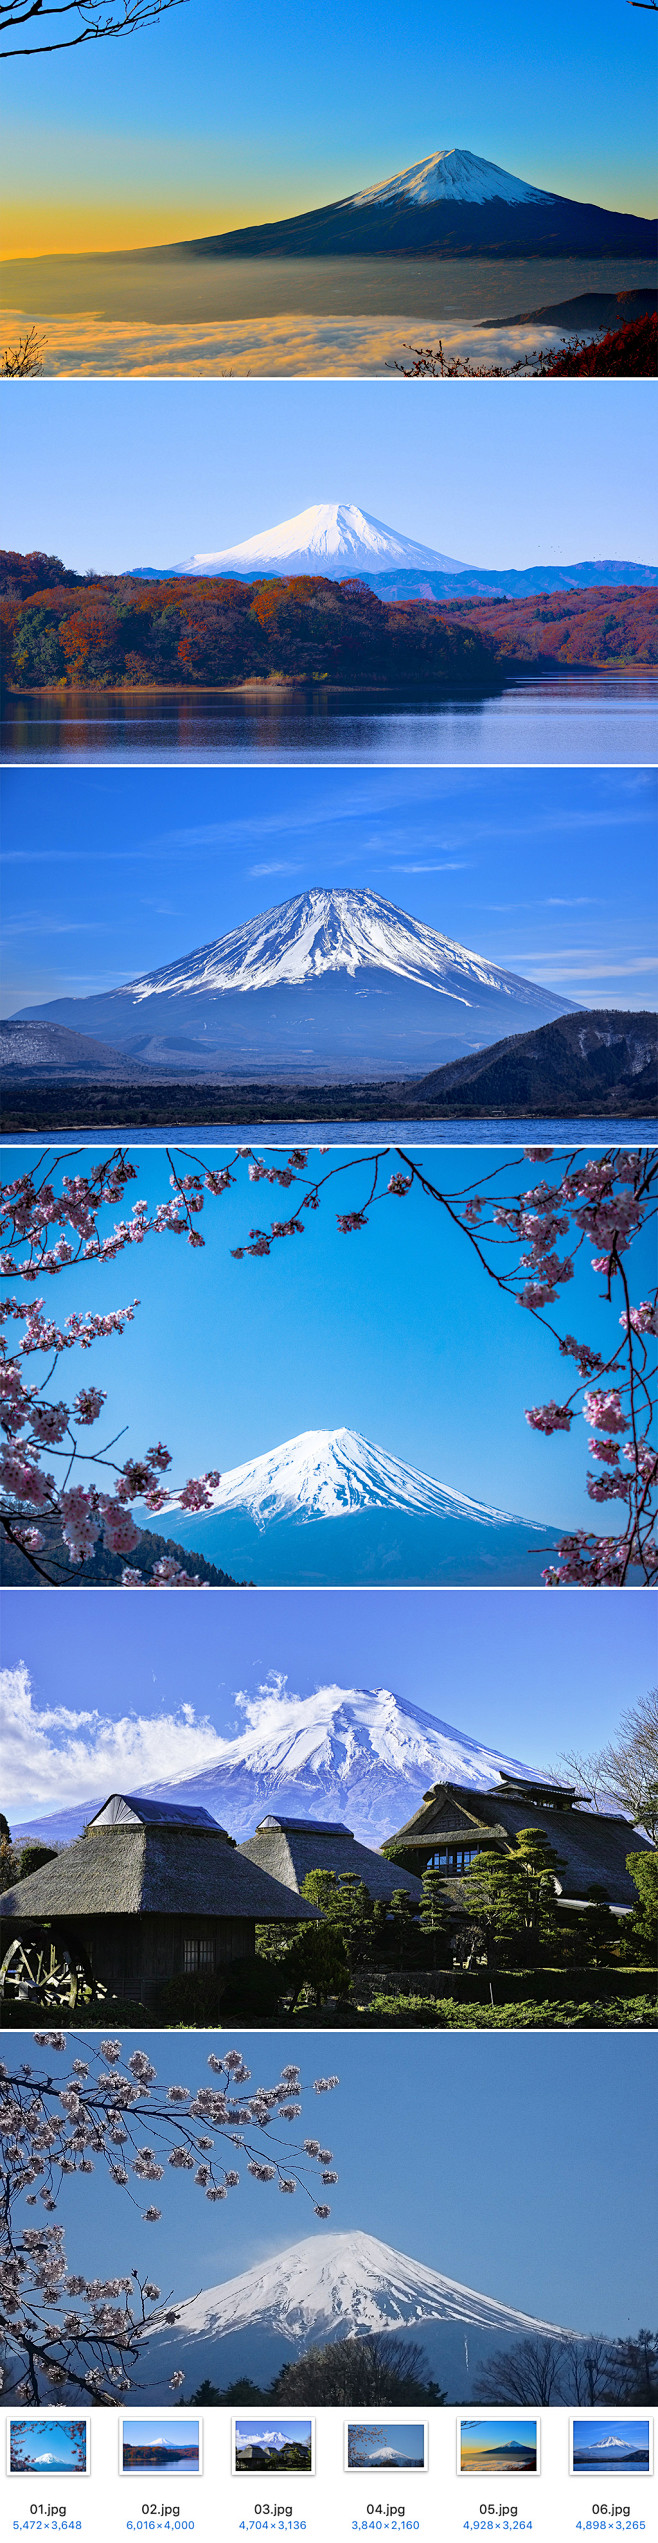 日本旅游富士山风景出国旅行著名景点雪山图...